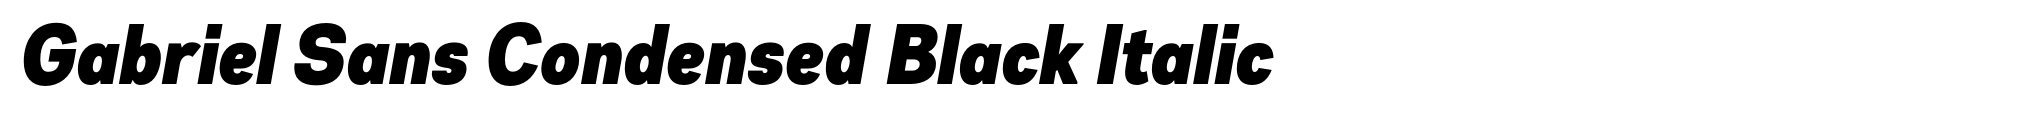 Gabriel Sans Condensed Black Italic image